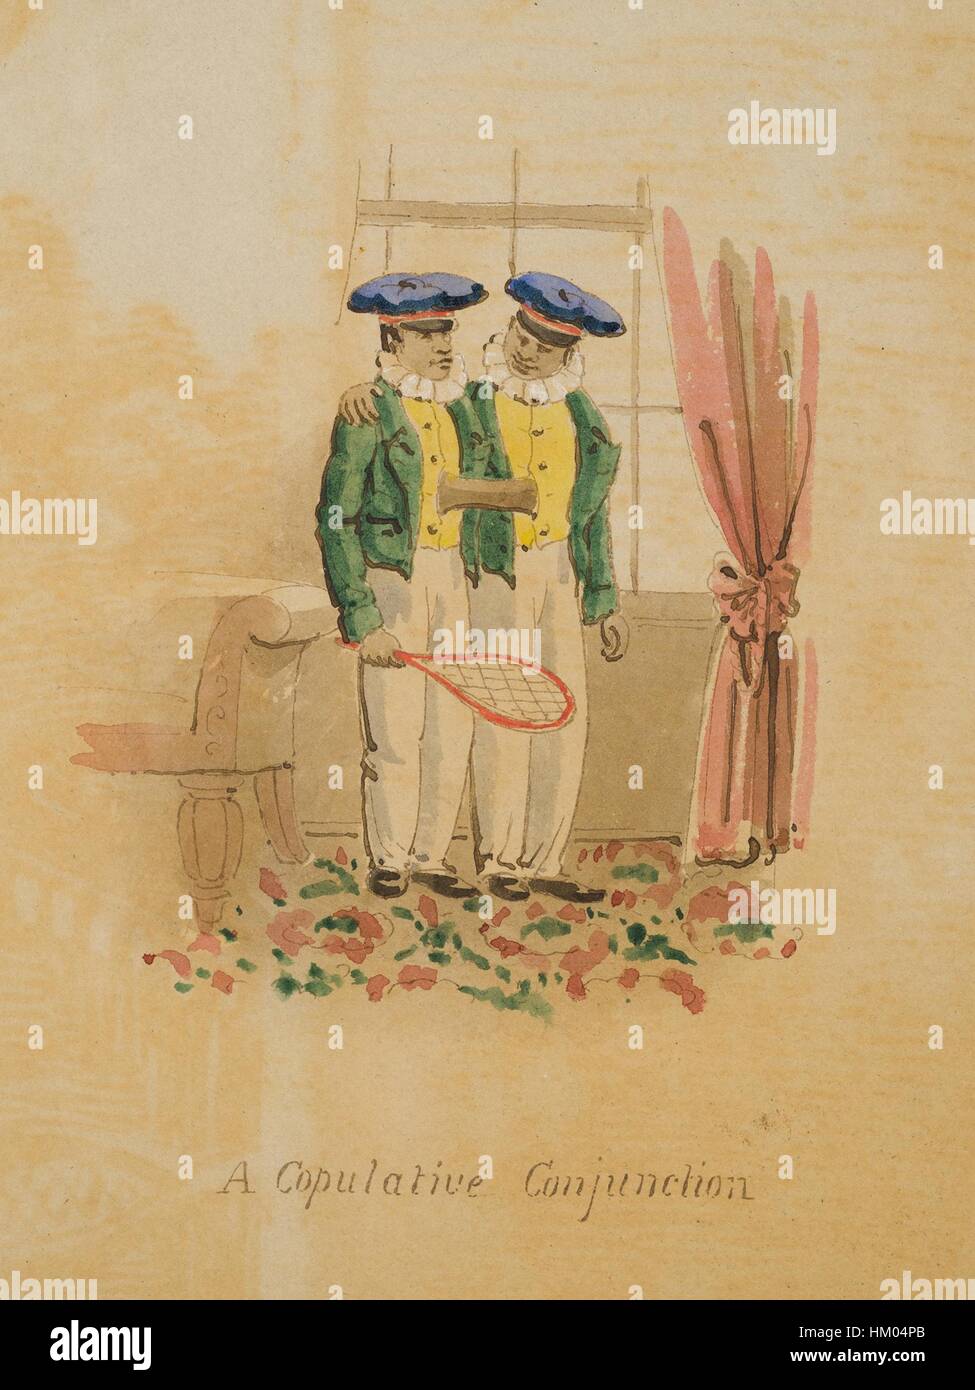 Aquarell mit Feder und Tinte, siamesische Zwillinge Eng (1811-1874) und Chang Bunker (1811-1874), von denen einer einen Badminton-Schläger, 1830 hält darstellt. Mit freundlicher Genehmigung National Library of Medicine. Stockfoto